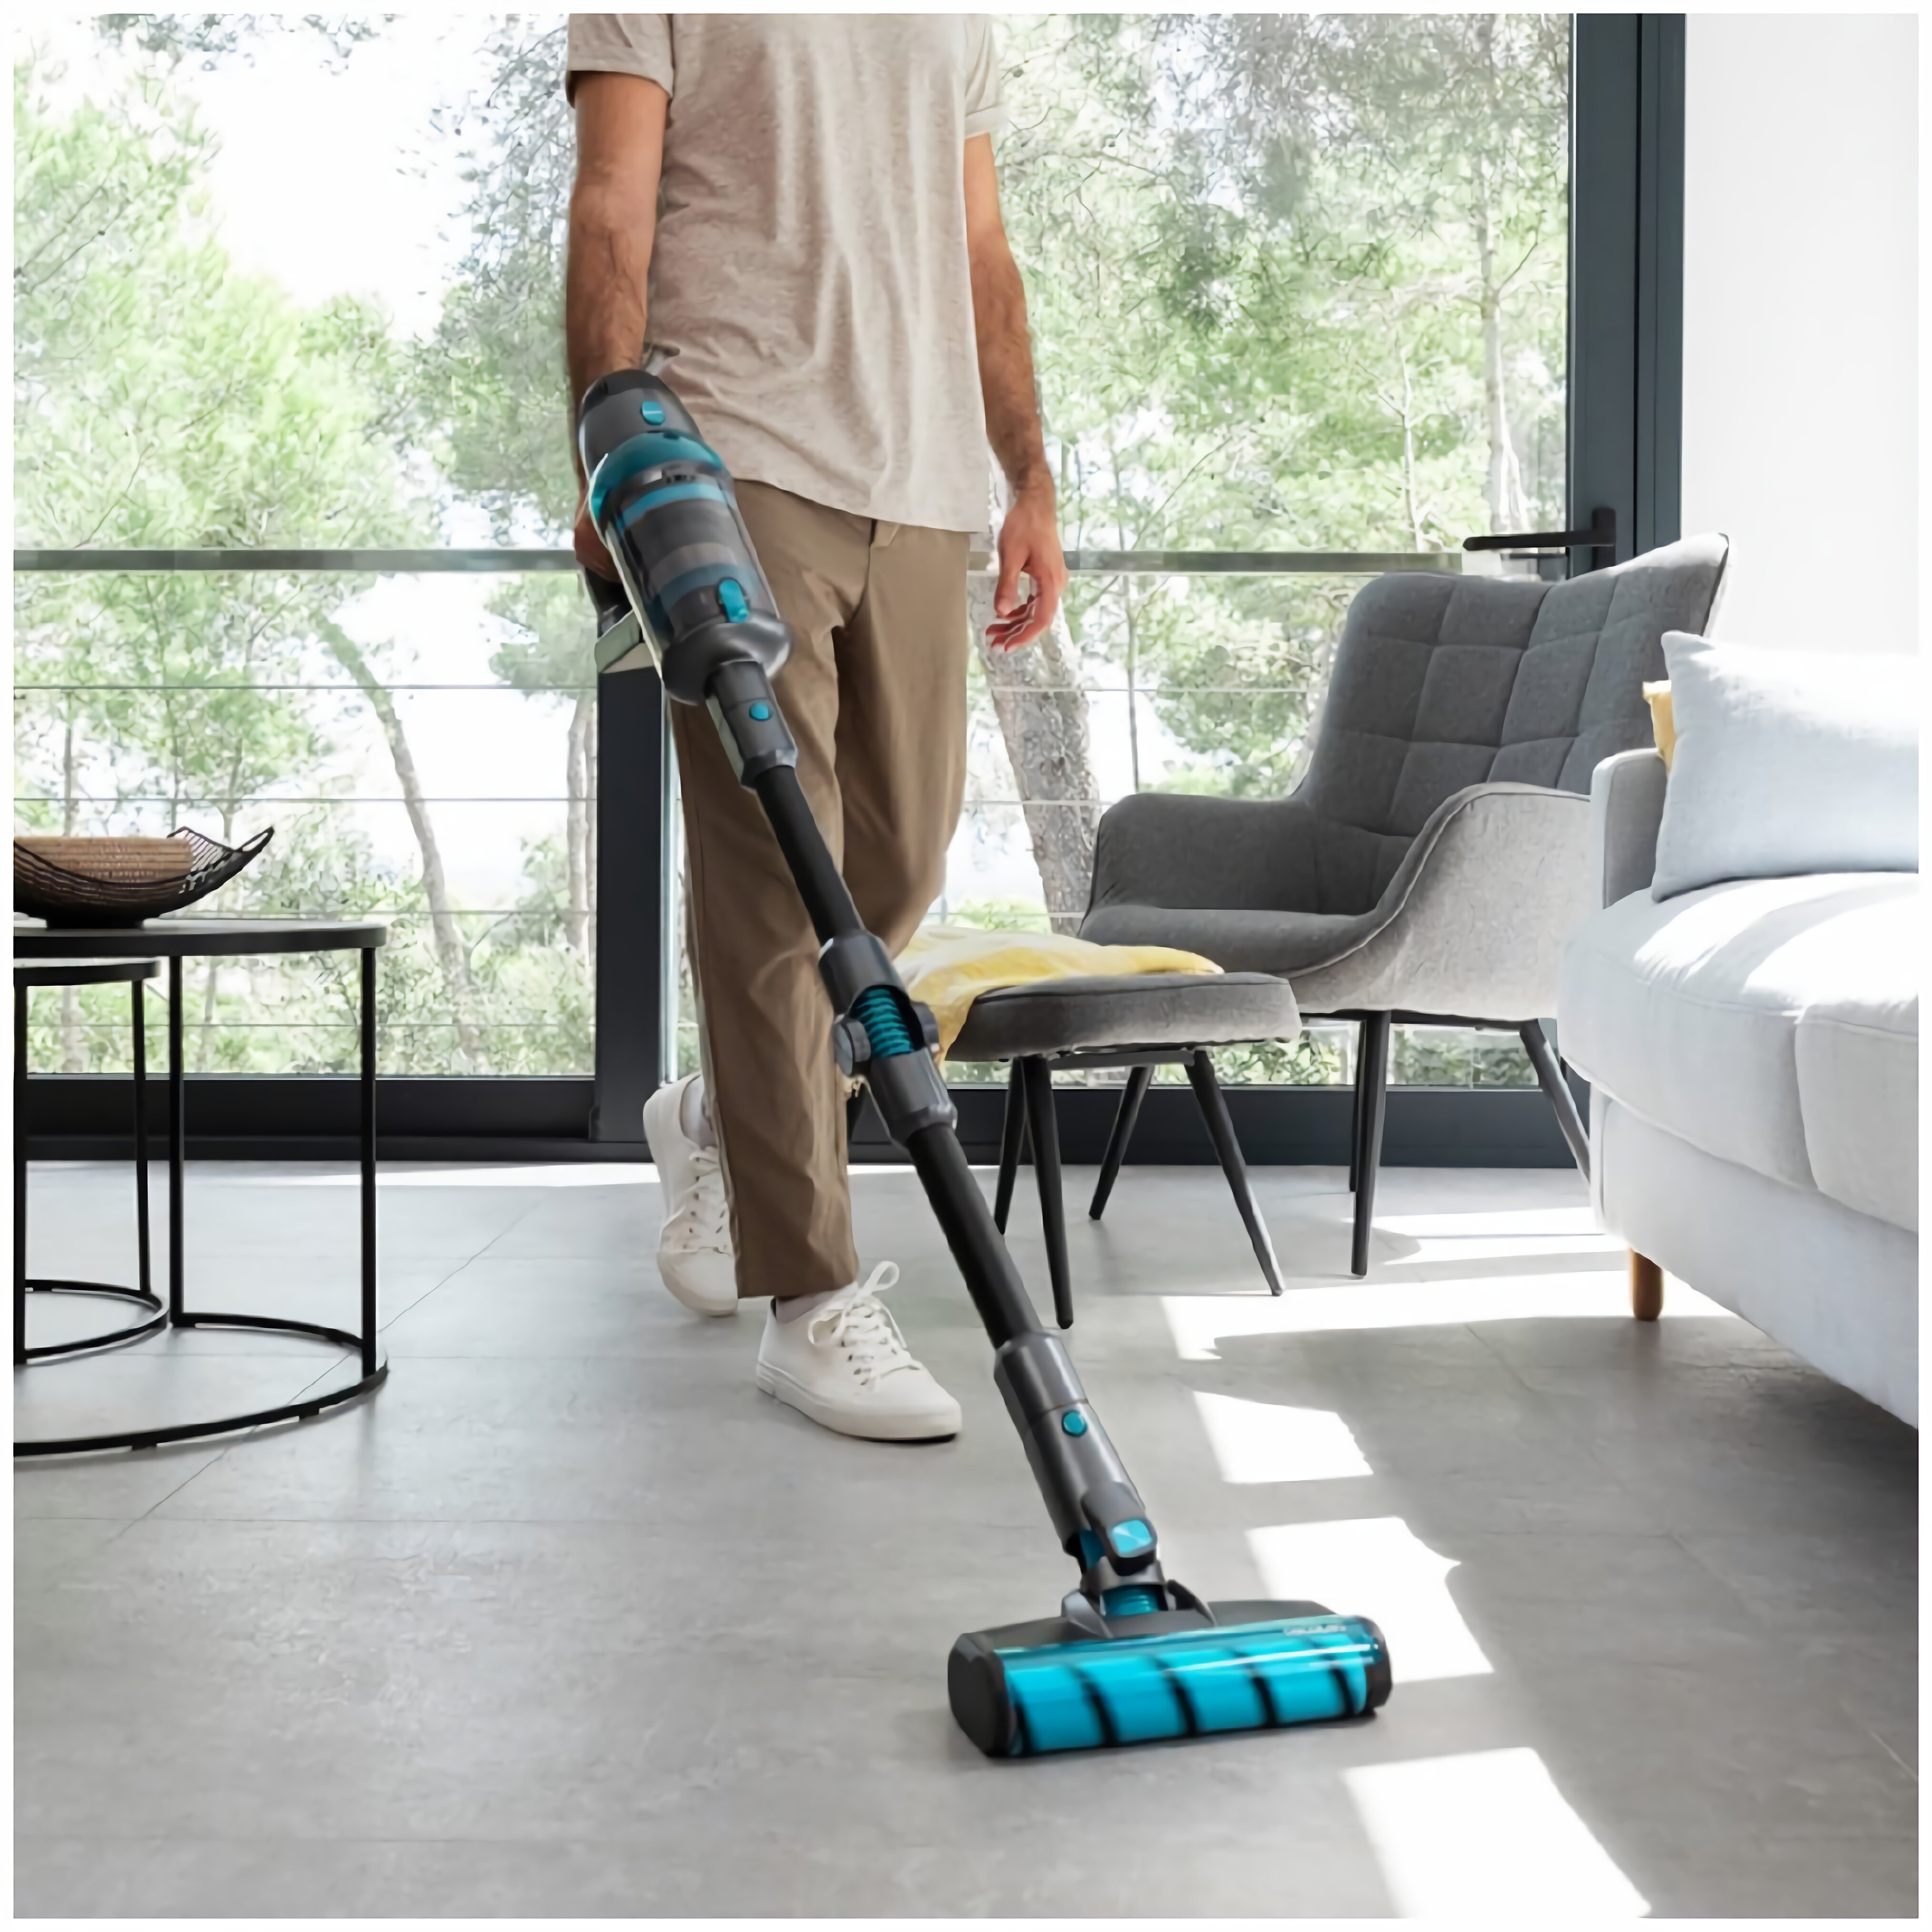 Jeden produkt Cecotec zastąpi cztery urządzenia do sprzątania domu